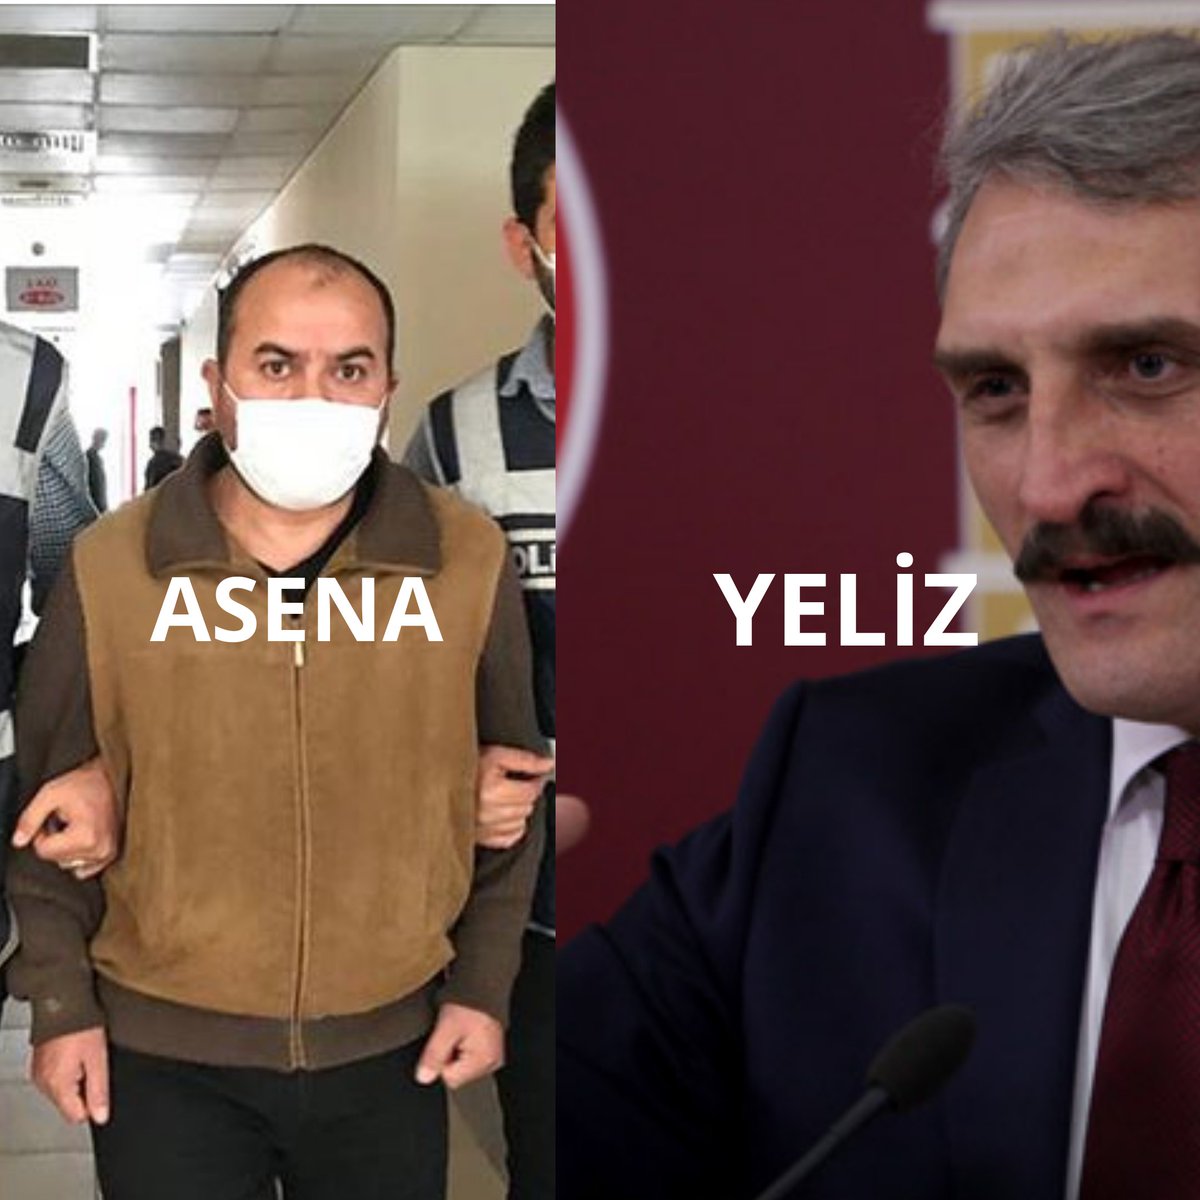 Bu Ara Yelizler ve Asena'lar sahnede

Asena (@gara_alaca) :#izmirdepreminde zarar gören vatandaşlara 

Yeliz (@ahmethamdicamli) : Türkan Şoray' a laf ediyor.

Takmayın her kılığa girenleri

Ortak noktaları İse 2 side Ak....

Ortk Noktaları Ak..... 
 
 #AzizNesin
#ismailküçükkaya